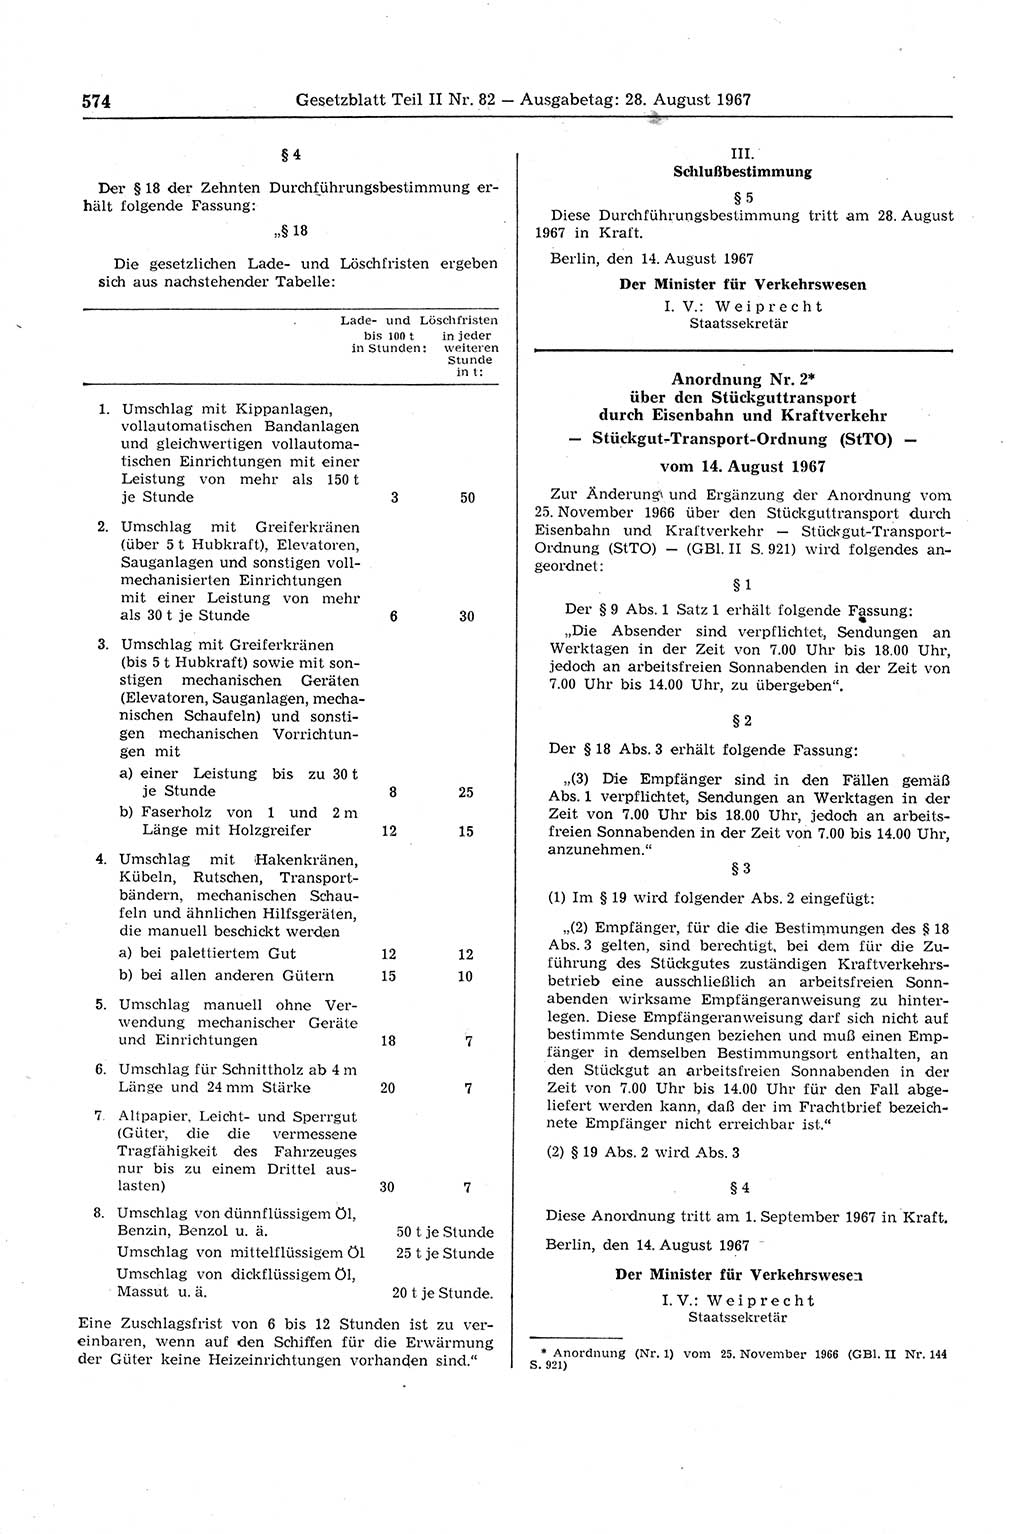 Gesetzblatt (GBl.) der Deutschen Demokratischen Republik (DDR) Teil ⅠⅠ 1967, Seite 574 (GBl. DDR ⅠⅠ 1967, S. 574)